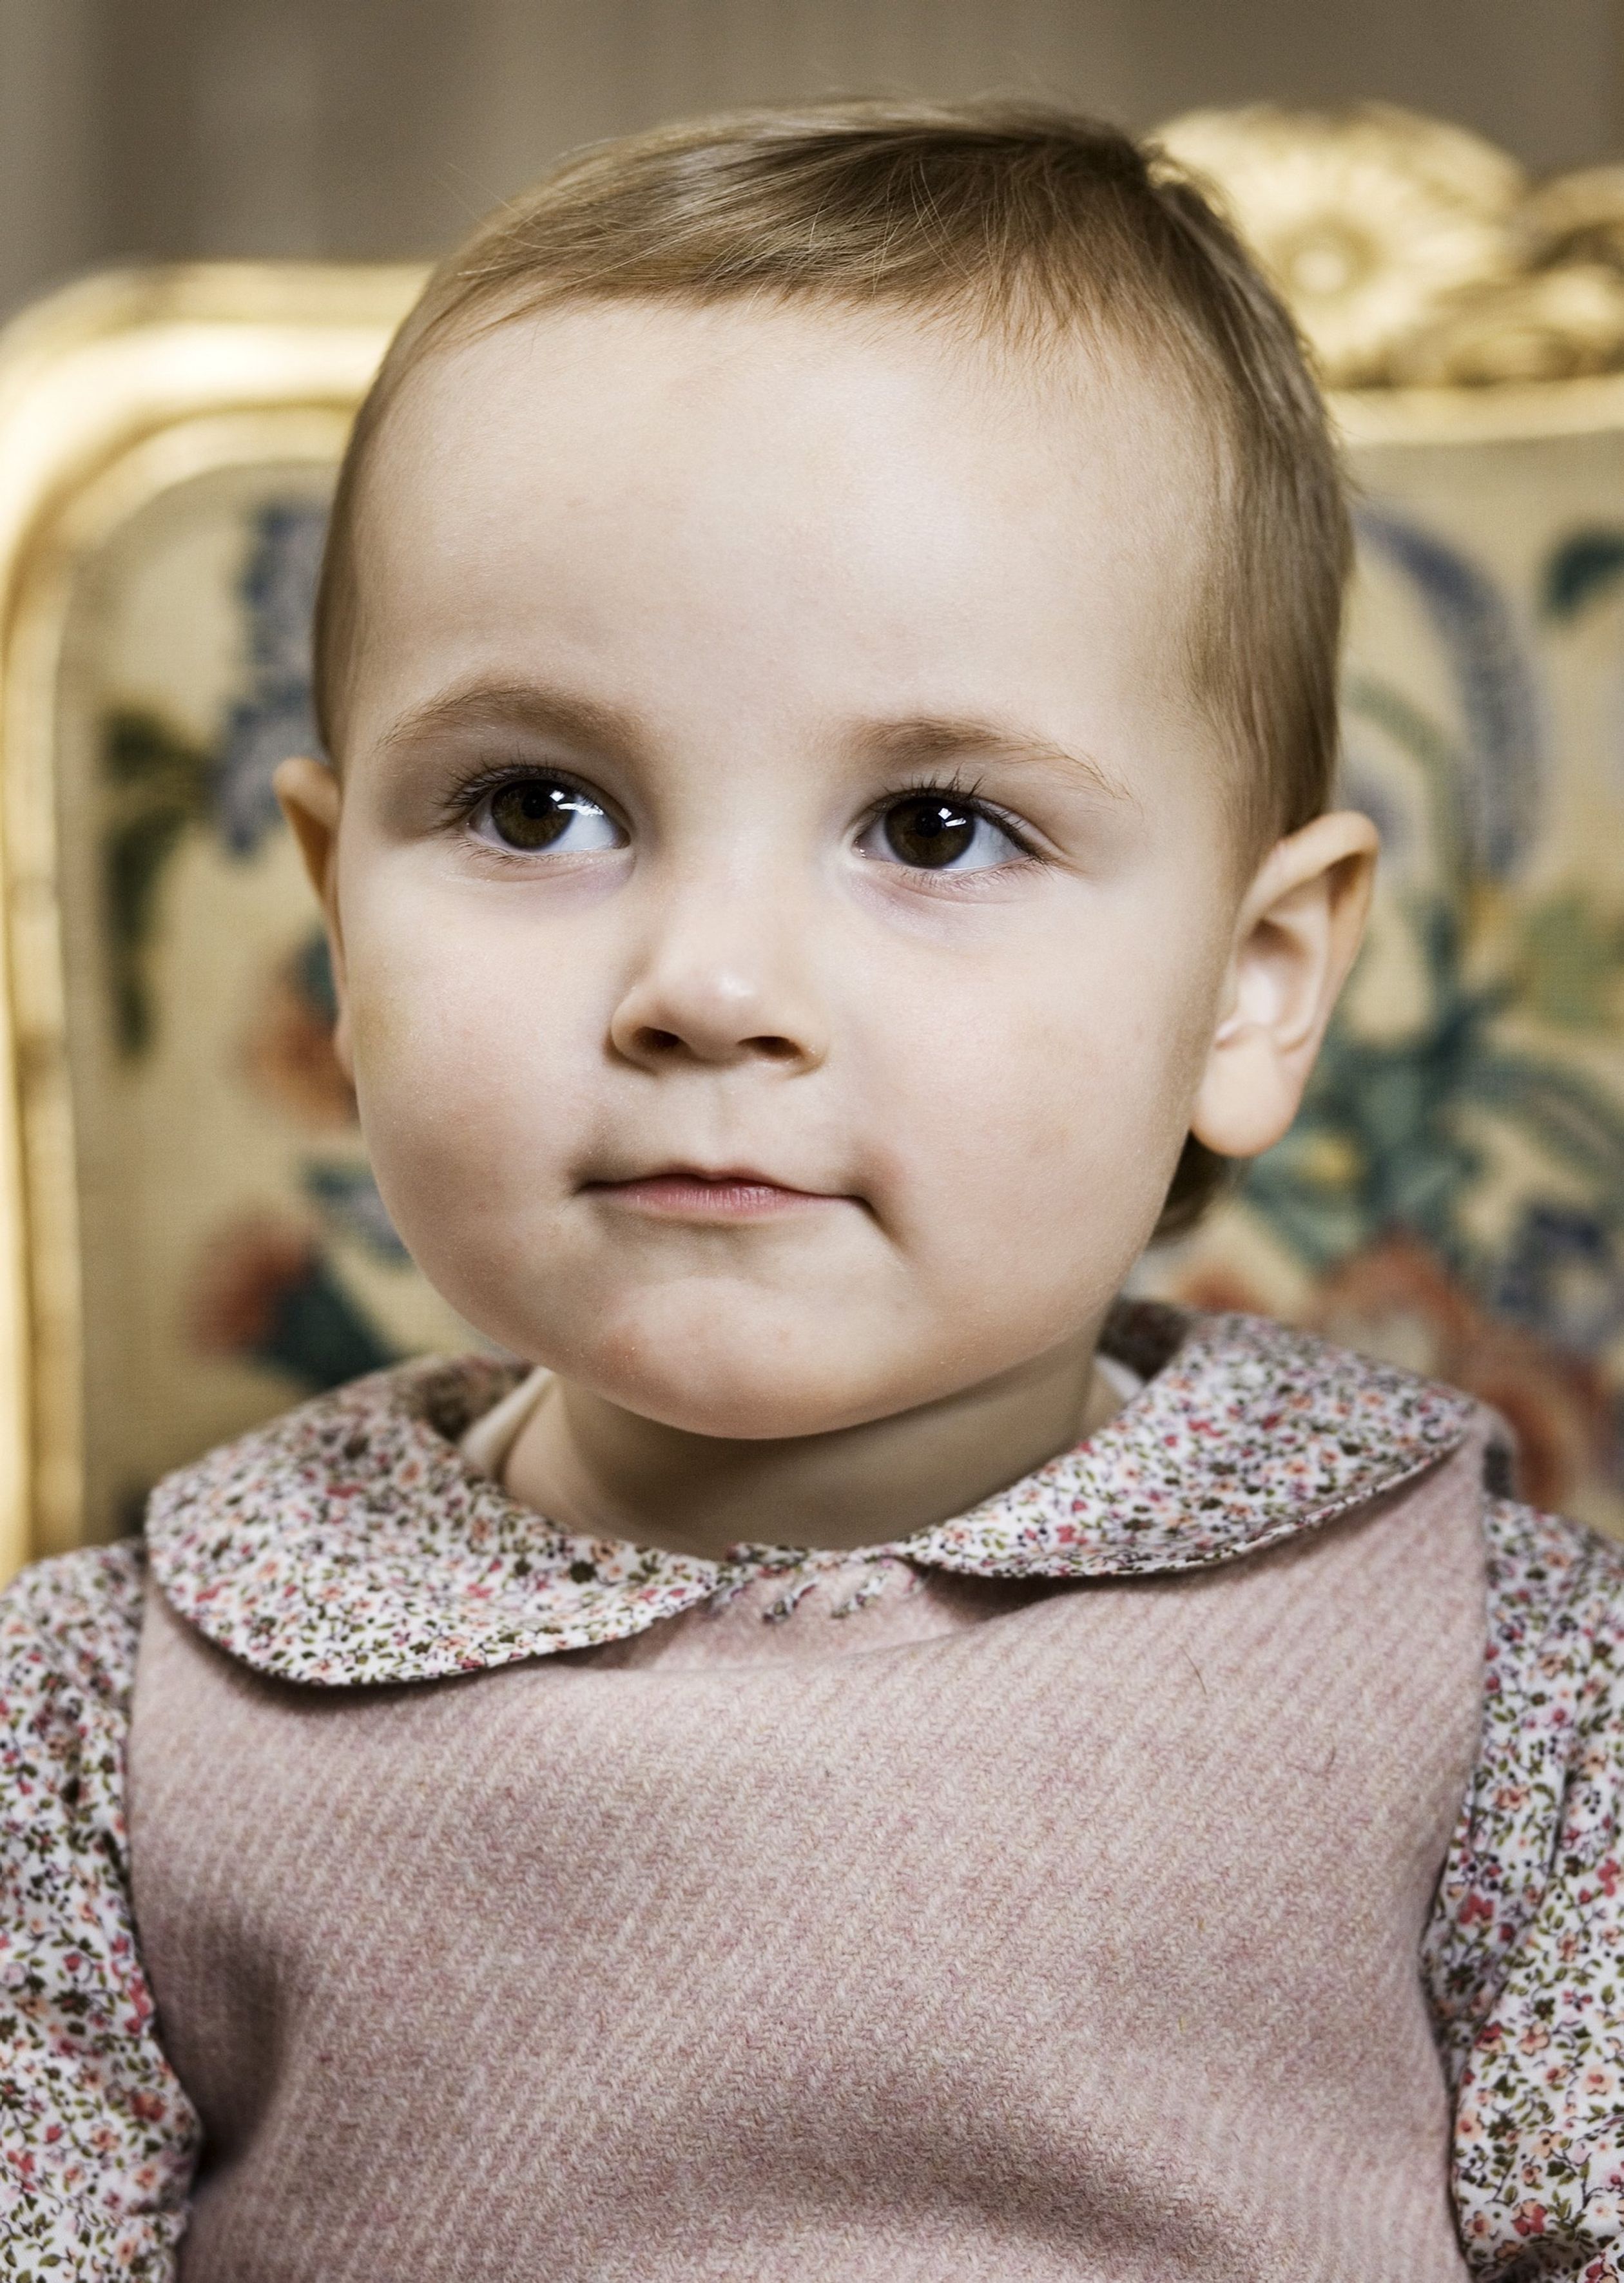 Prinses Ingrid-Alexandra op haar tweede verjaardag, 21 januari 2006.